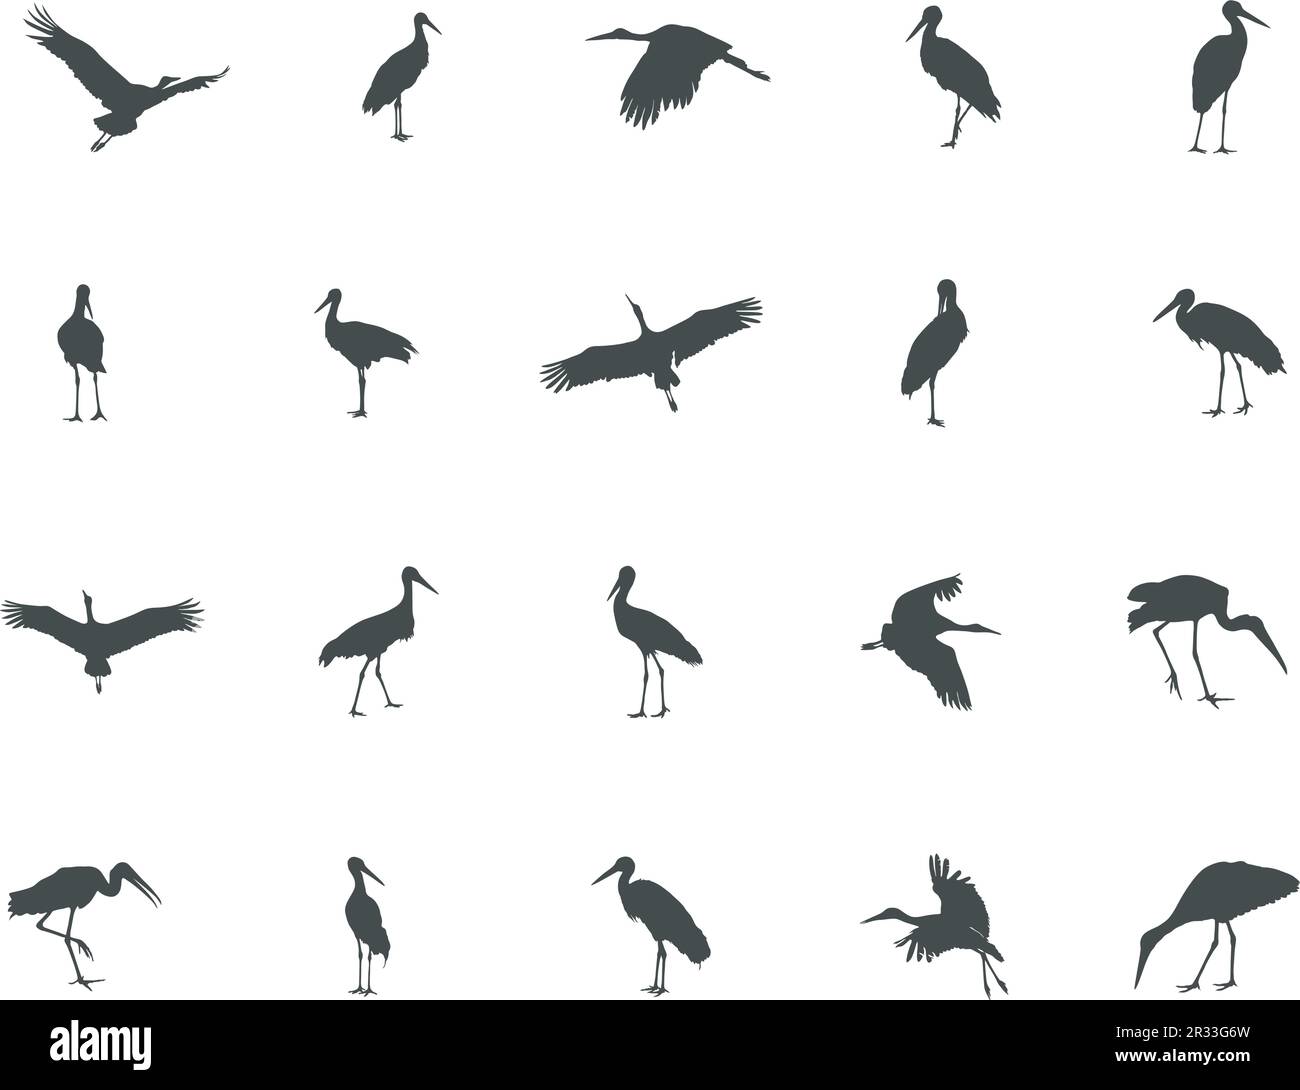 Stork silhouette, Stork vector silhouette, Flying stork silhouette ...